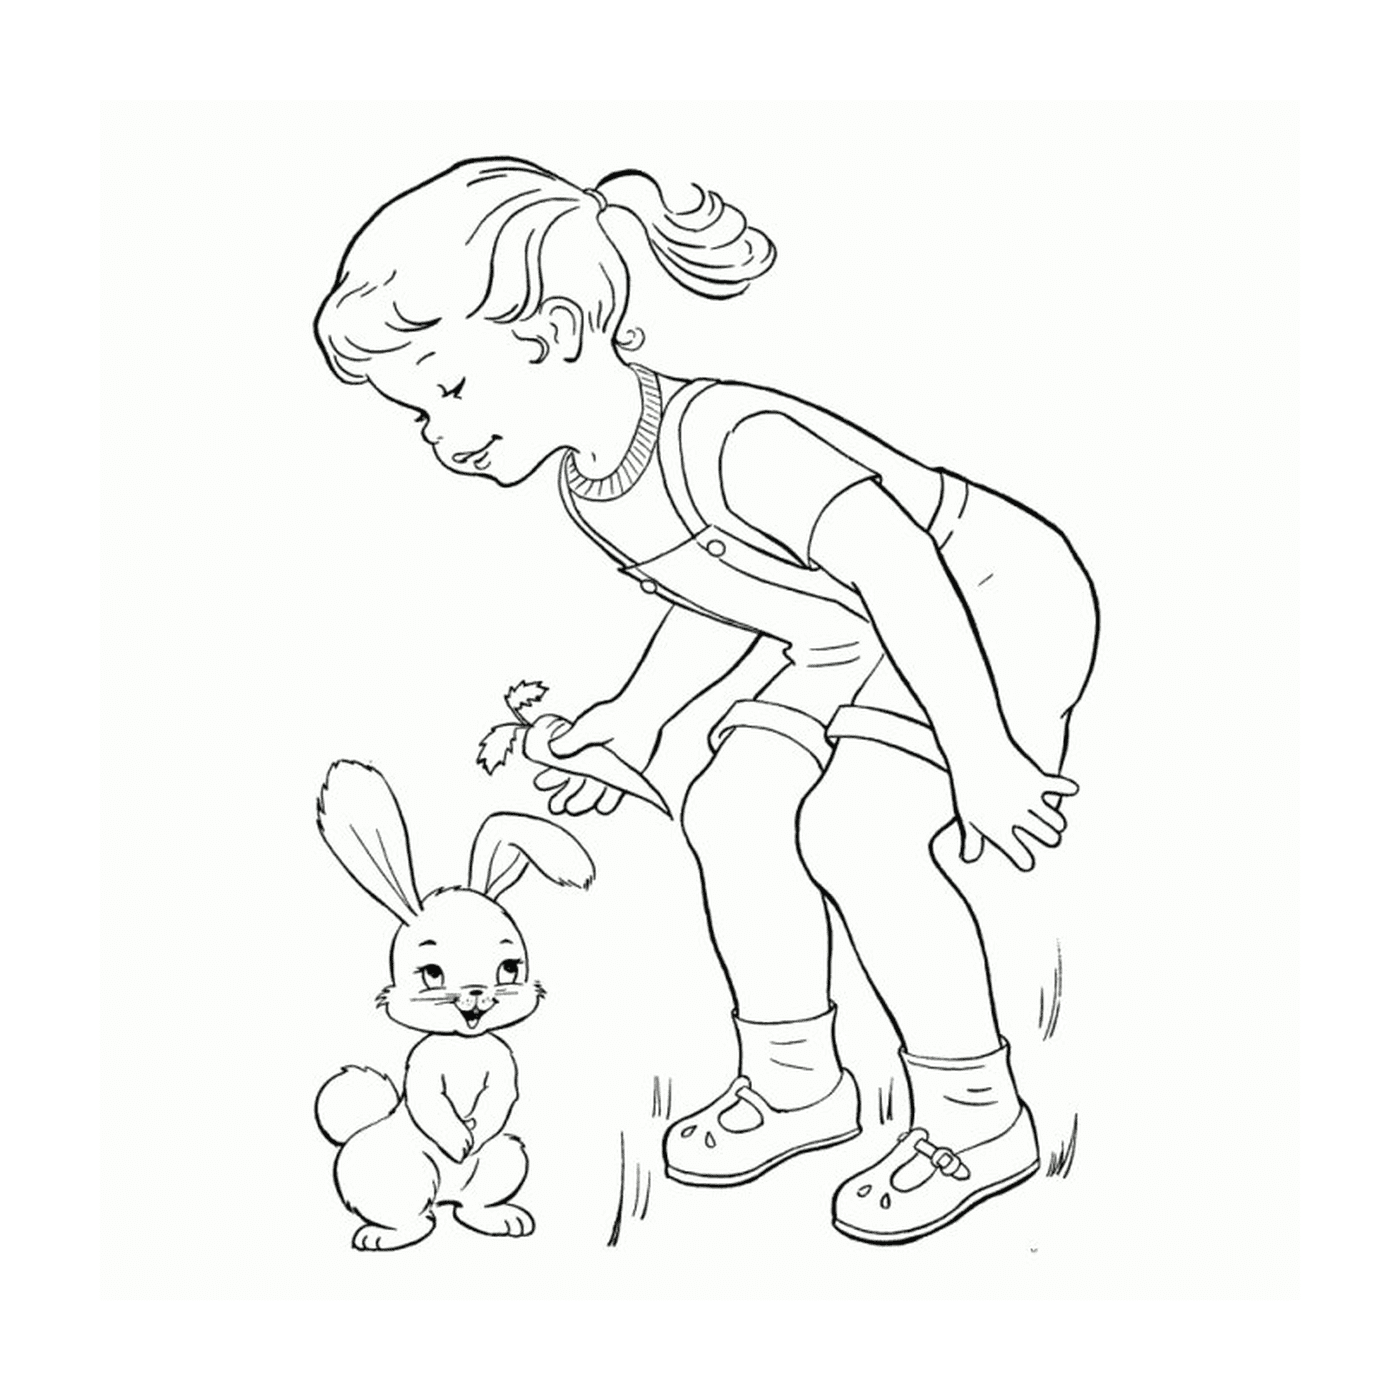  Ein kleines Mädchen neben einem kleinen Kaninchen 